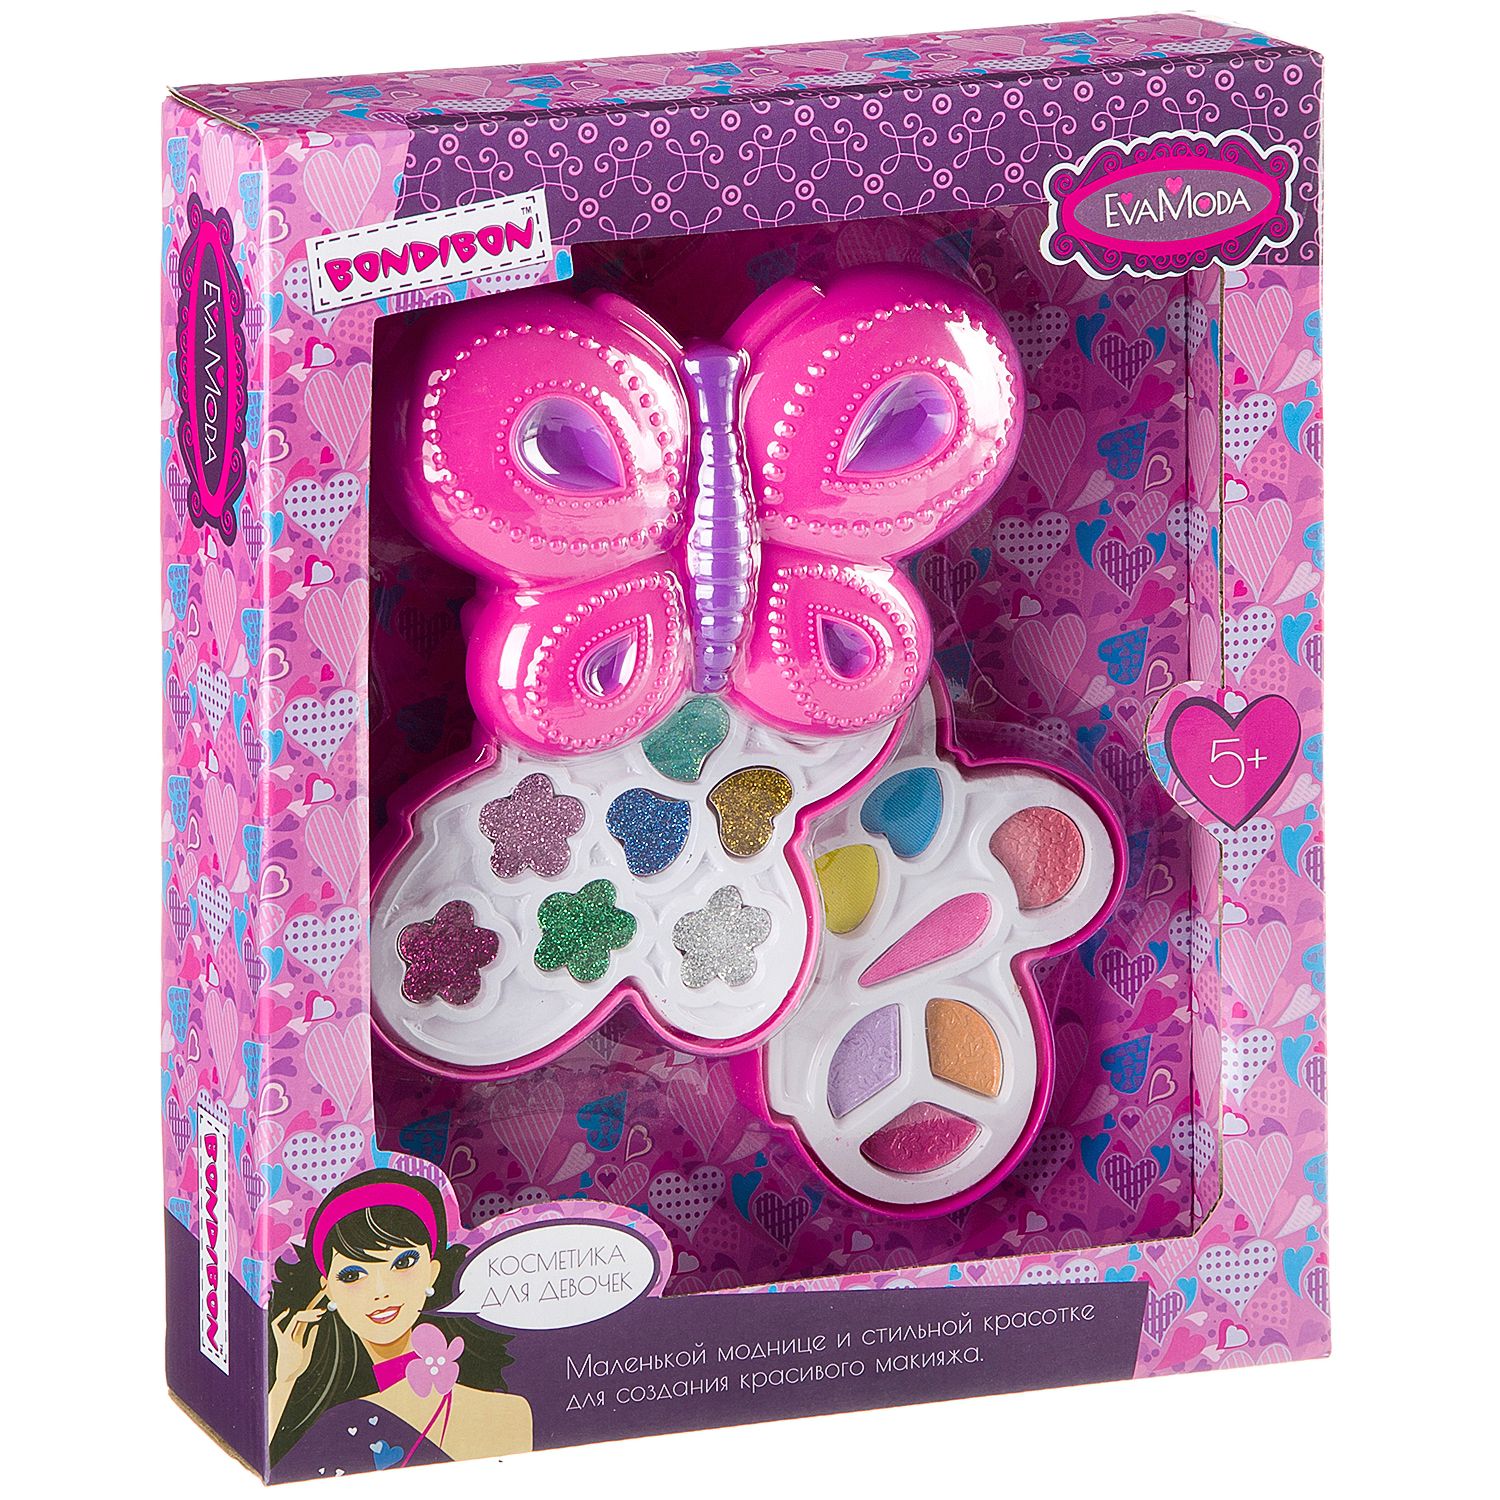 Детская декоративная косметика BONDIBON серия Eva Moda косметичка Бабочка розового цвета - фото 1